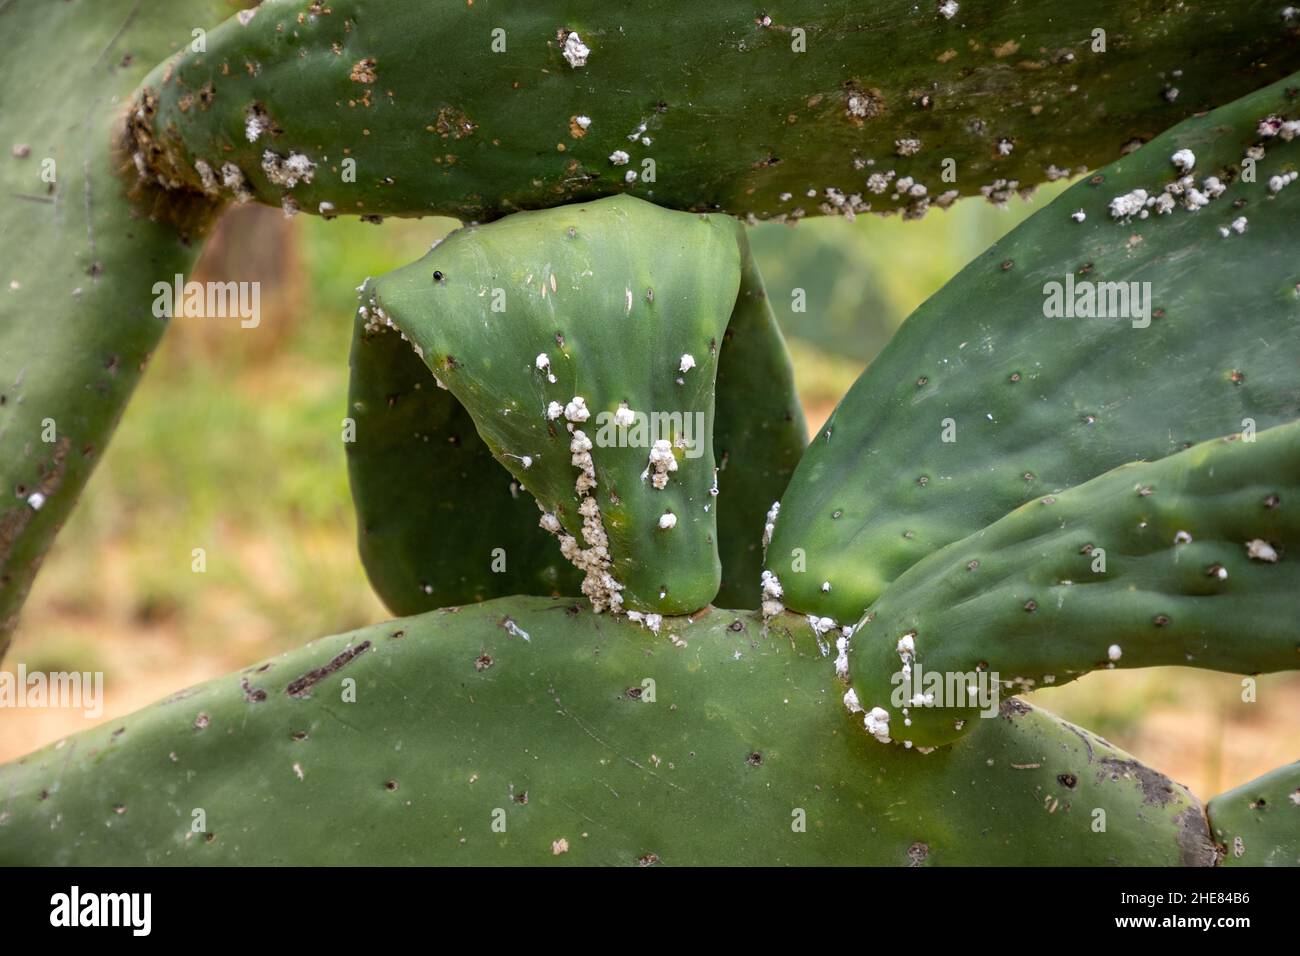 Hoja de una planta de cactus de pera espinosa. La planta tiene un pequeño brote de insectos cochineales. Los insectos cochineales se utilizan como colorante rojo natural Foto de stock